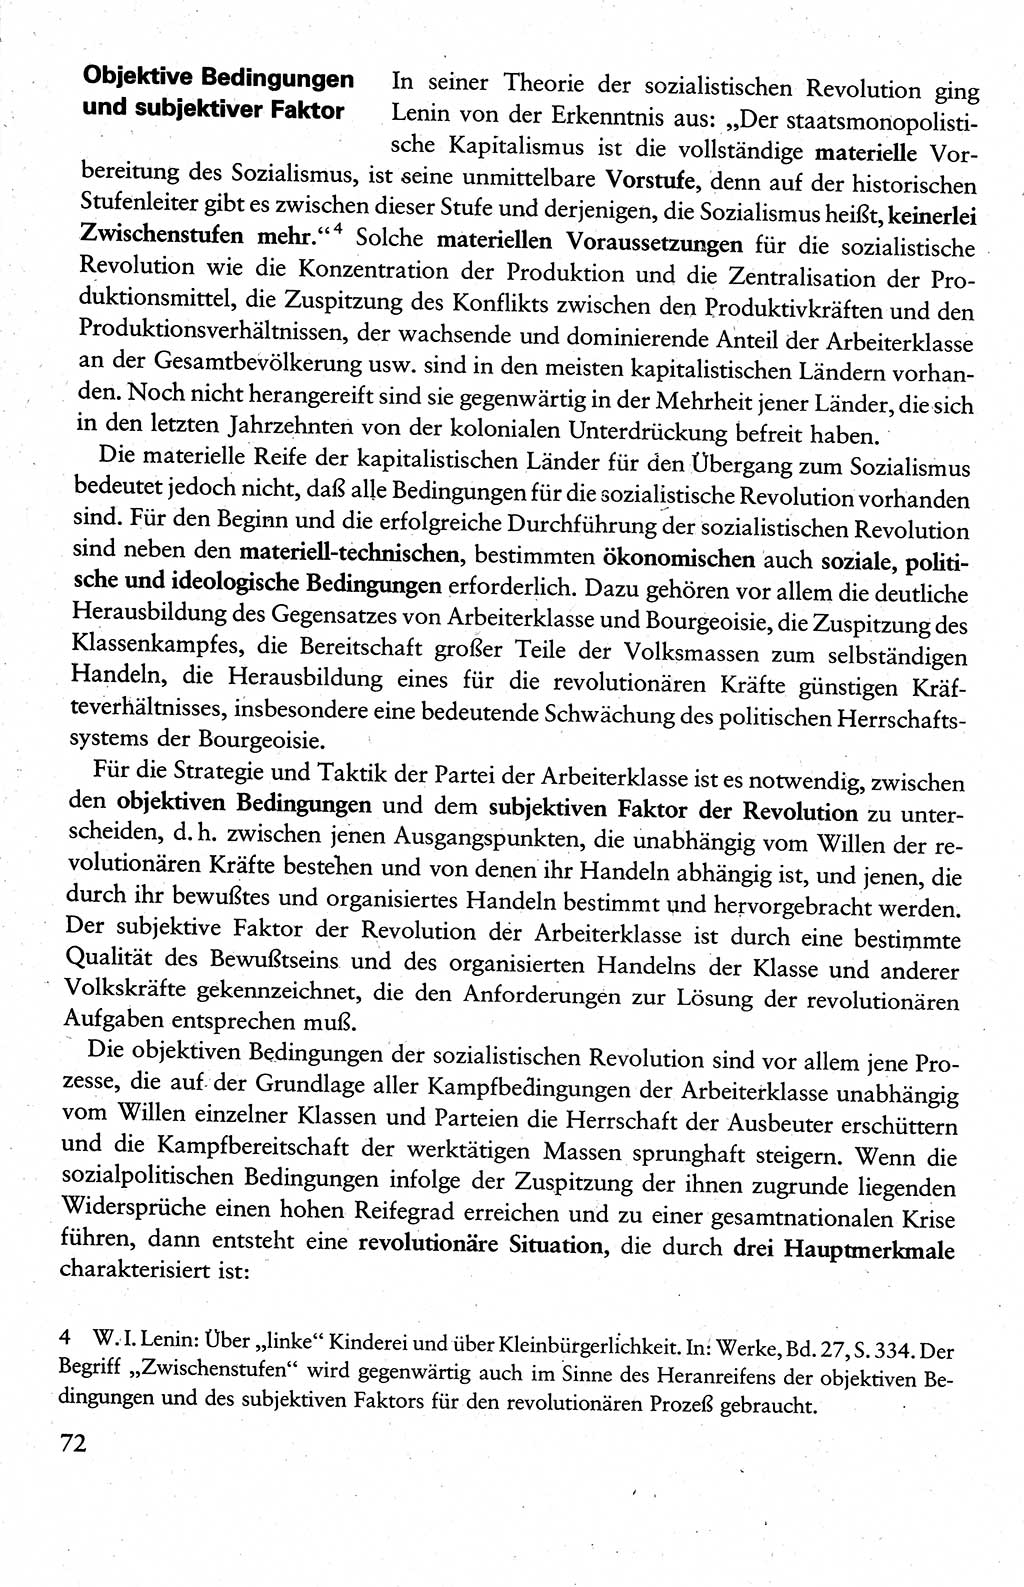 Wissenschaftlicher Kommunismus [Deutsche Demokratische Republik (DDR)], Lehrbuch für das marxistisch-leninistische Grundlagenstudium 1983, Seite 72 (Wiss. Komm. DDR Lb. 1983, S. 72)